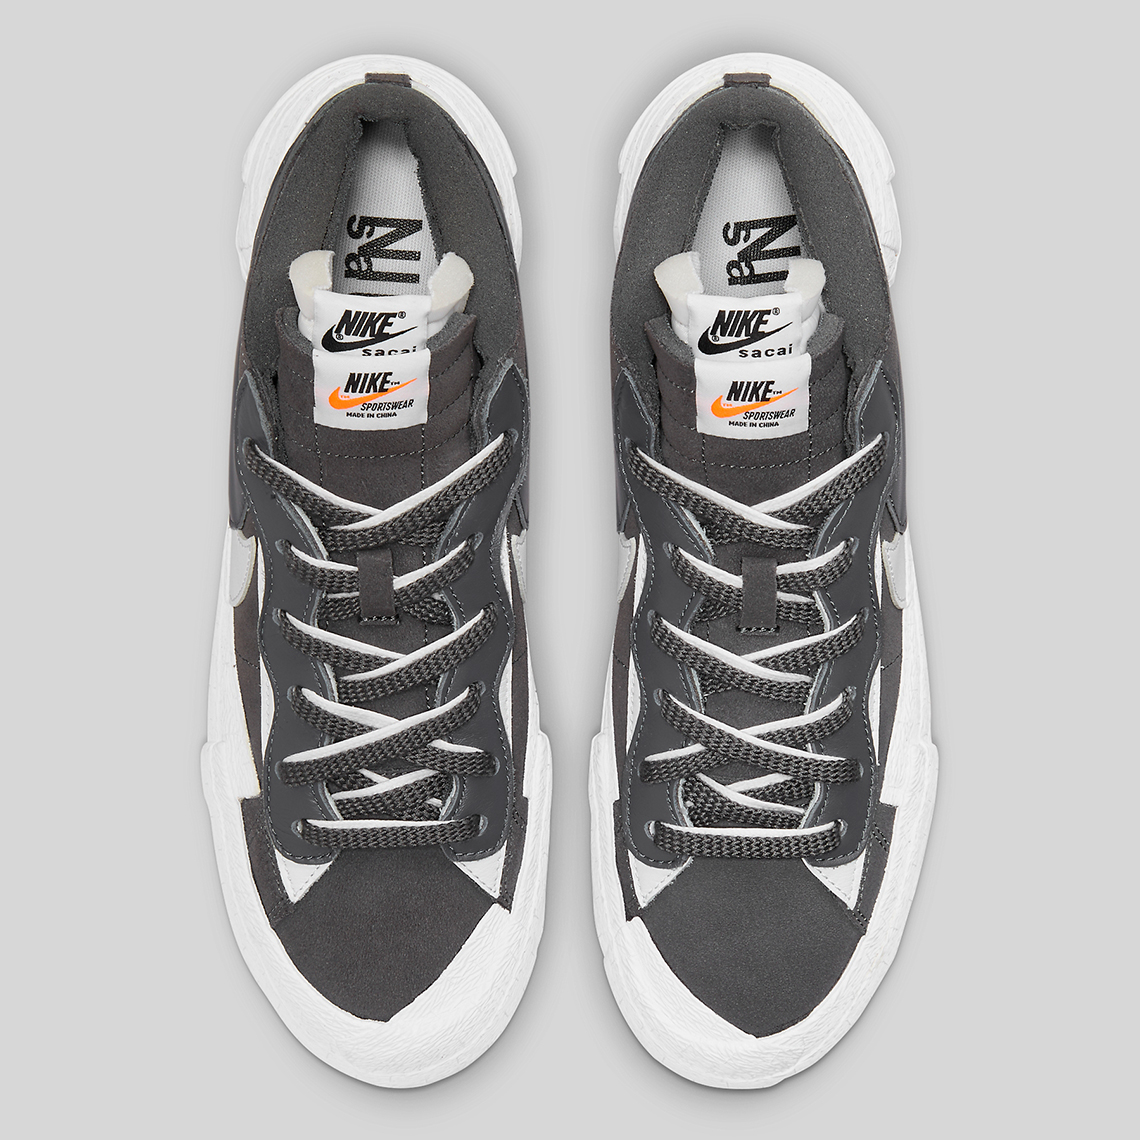 Sacai x Nike Blazer Low "Iron Grey" 2021 - Sneakersanalys